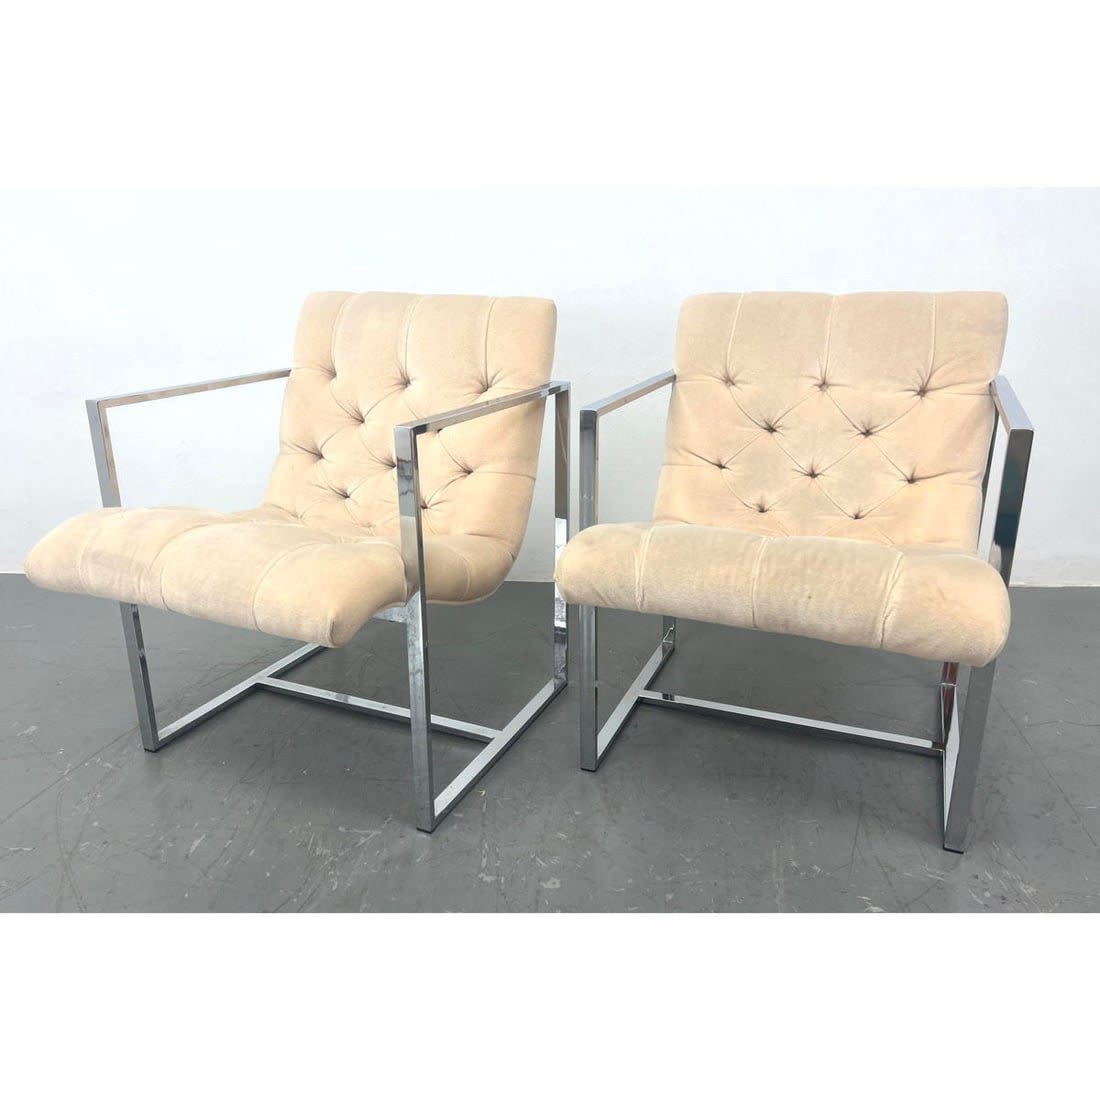 Pr Milo Baughman Style Lounge Chairs  362d9d